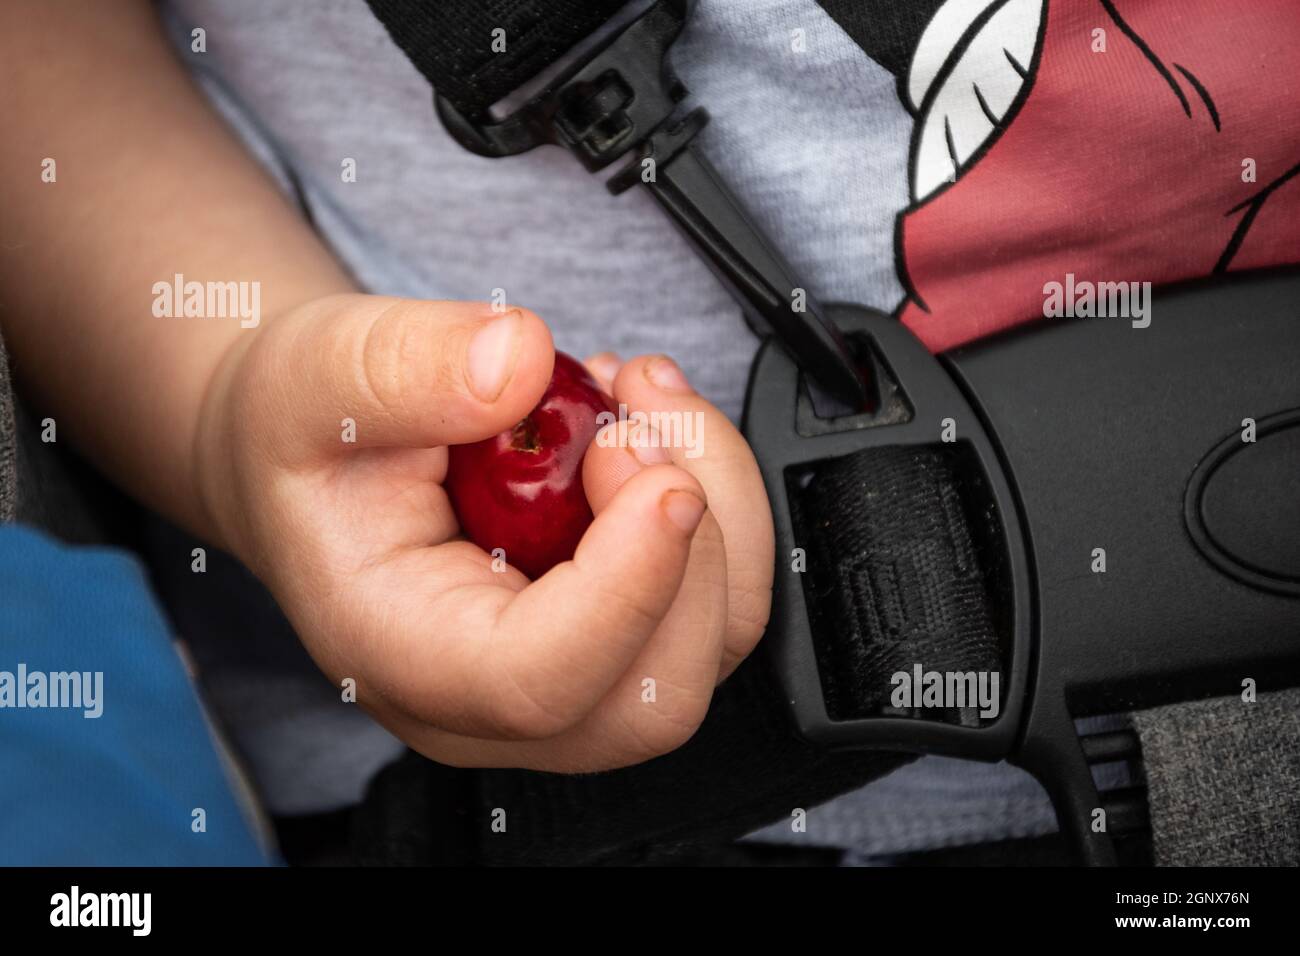 Nahaufnahme eines kleinen niedlichen Baby Hand hält eine rote Kirsche - Kindheit Stockfoto